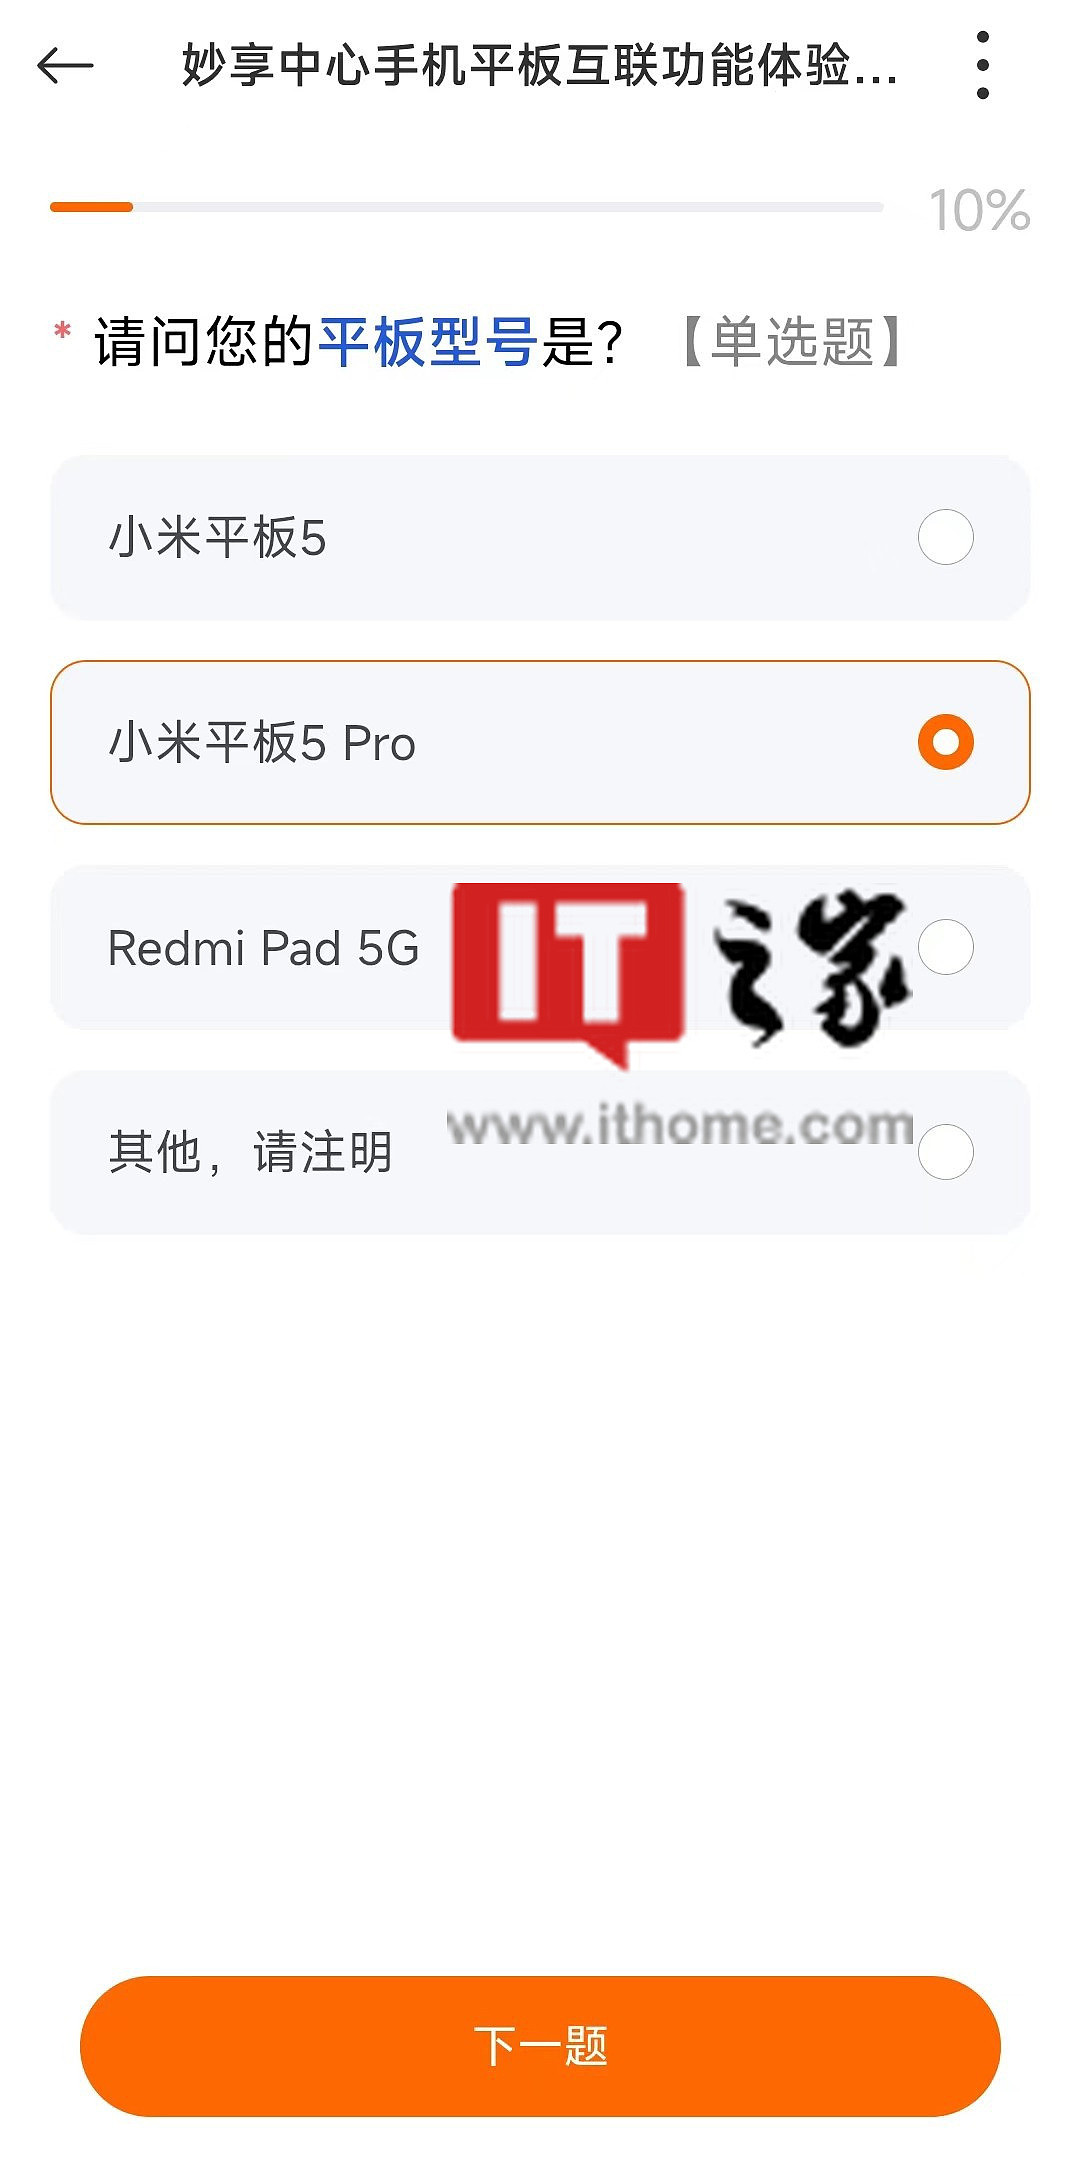 小米 Redmi 入门级平板曝光：搭载联发科迅鲲处理器，11 英寸 2K LCD 全面屏 - 1